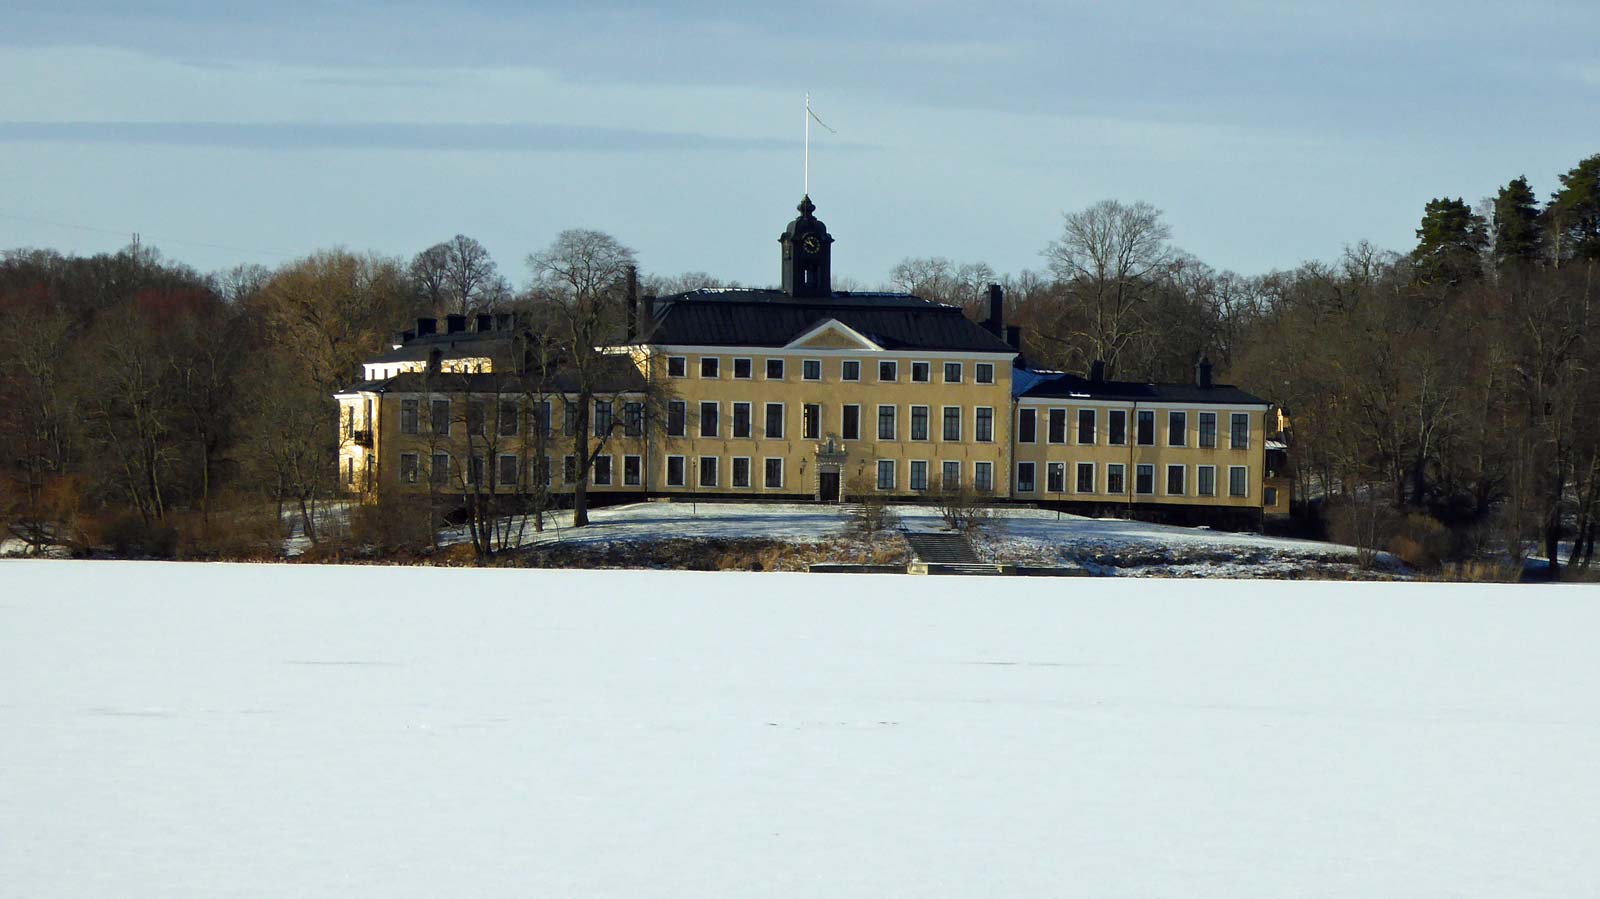 På andra sidan Edsviken ligger Ulriksdals slott. Det finns strandpromenad längs viken även på andra sidan, som norr om slottet.